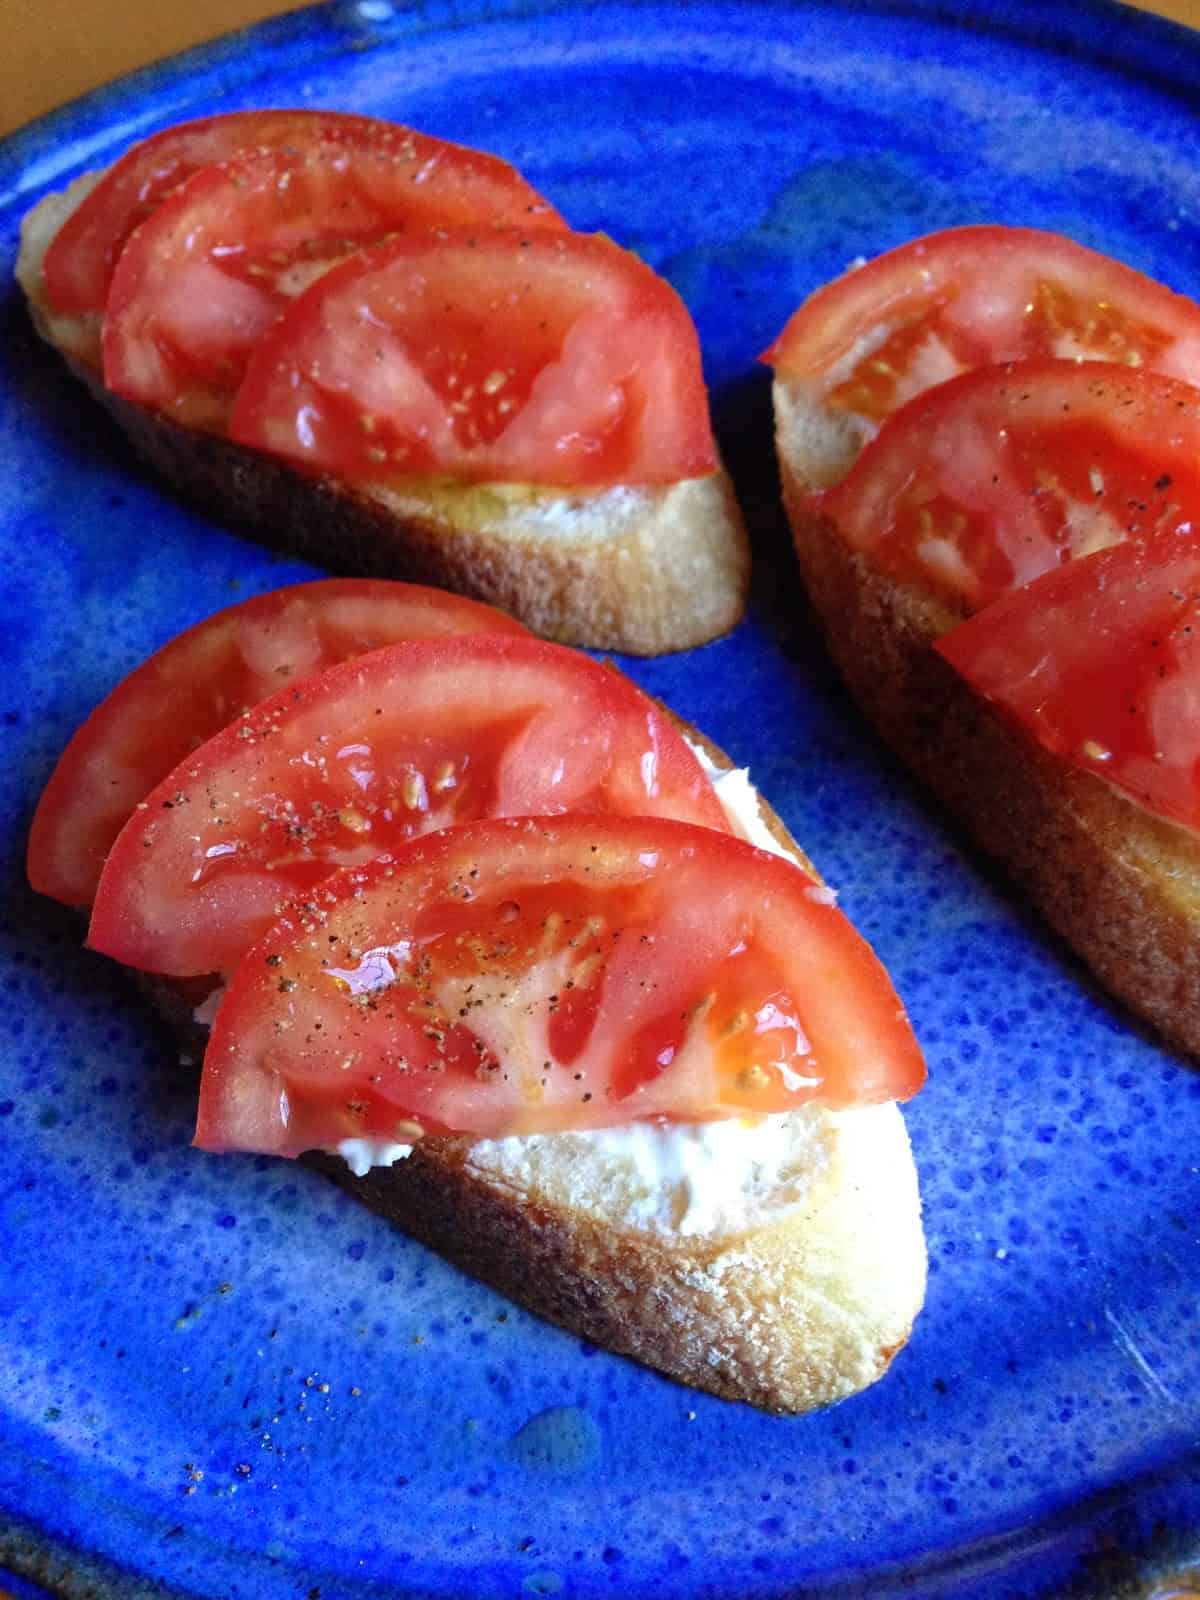 Tapas to enjoy with sangria - tomato goat cheese toasts